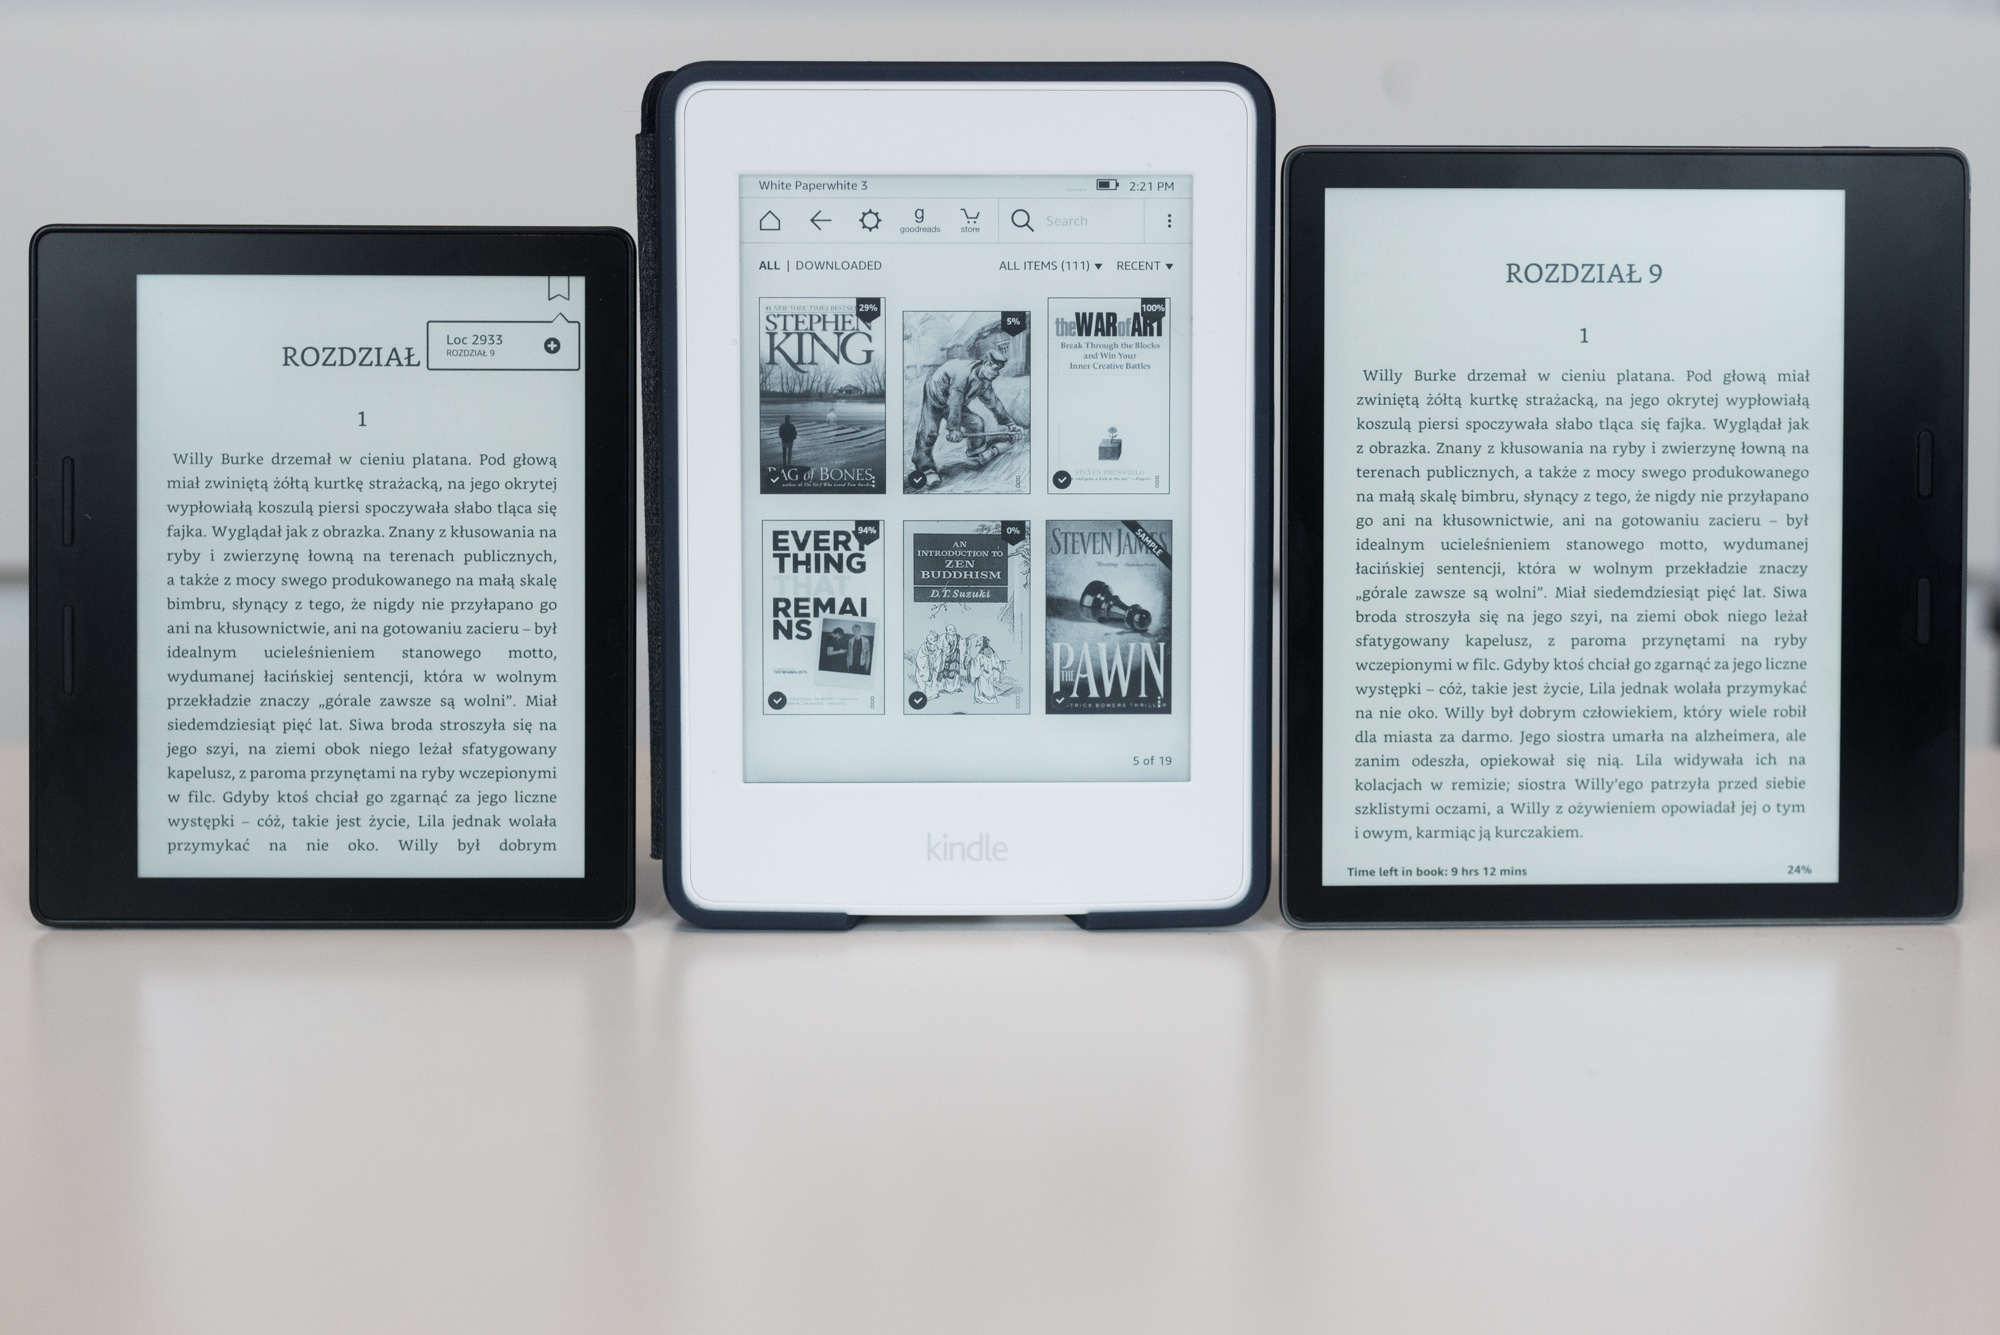 Люди, начинающие свое приключение с электронных книг, должны подумать о покупке Kindle Paperwhite 3, чье соотношение цены и качества намного лучше